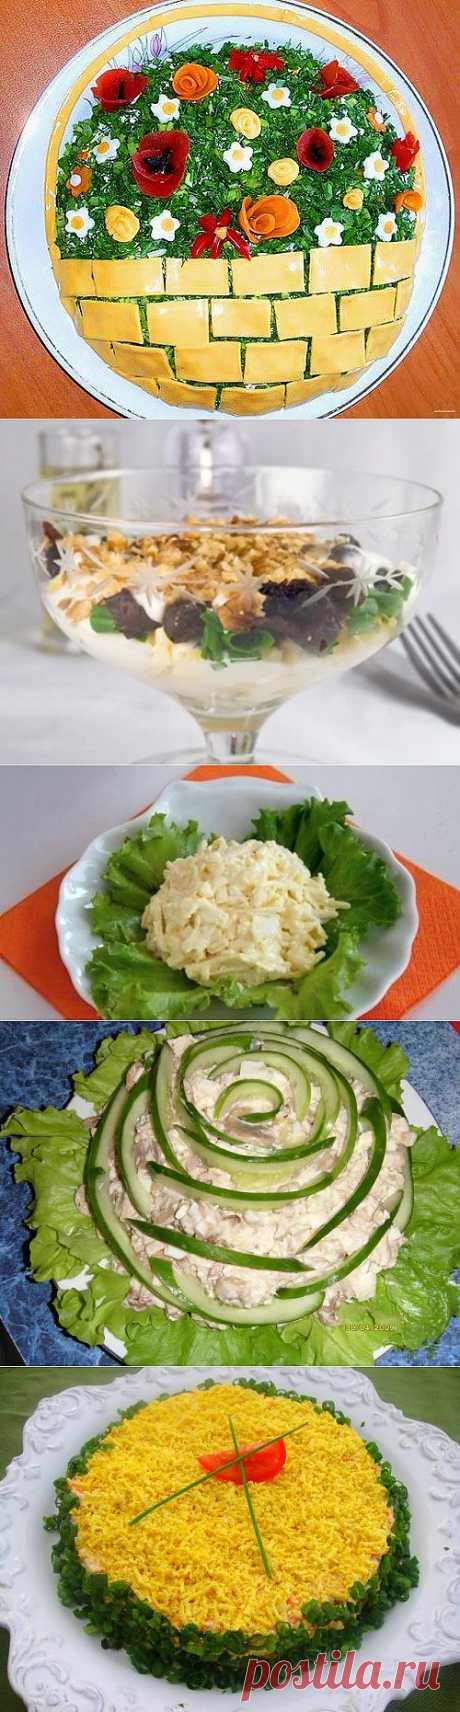 Вкусная еда: салаты с плавленым сыром / Простые рецепты